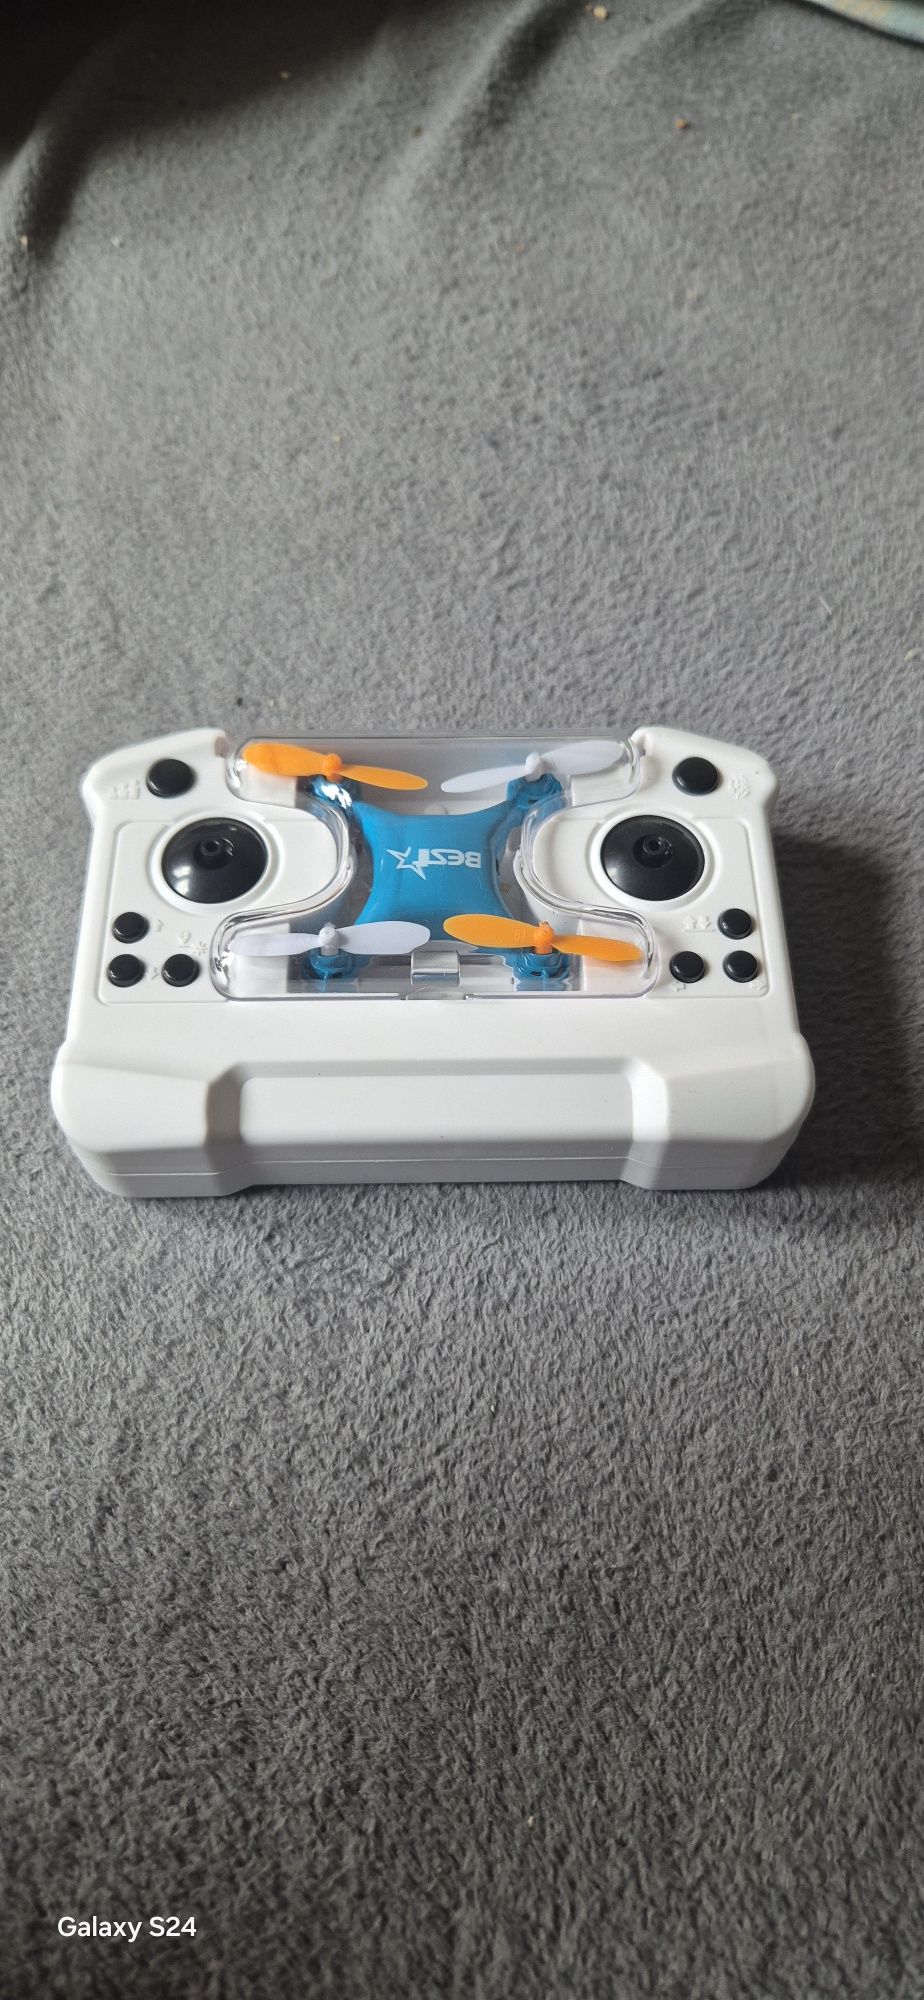 Mini dron dla dzieci